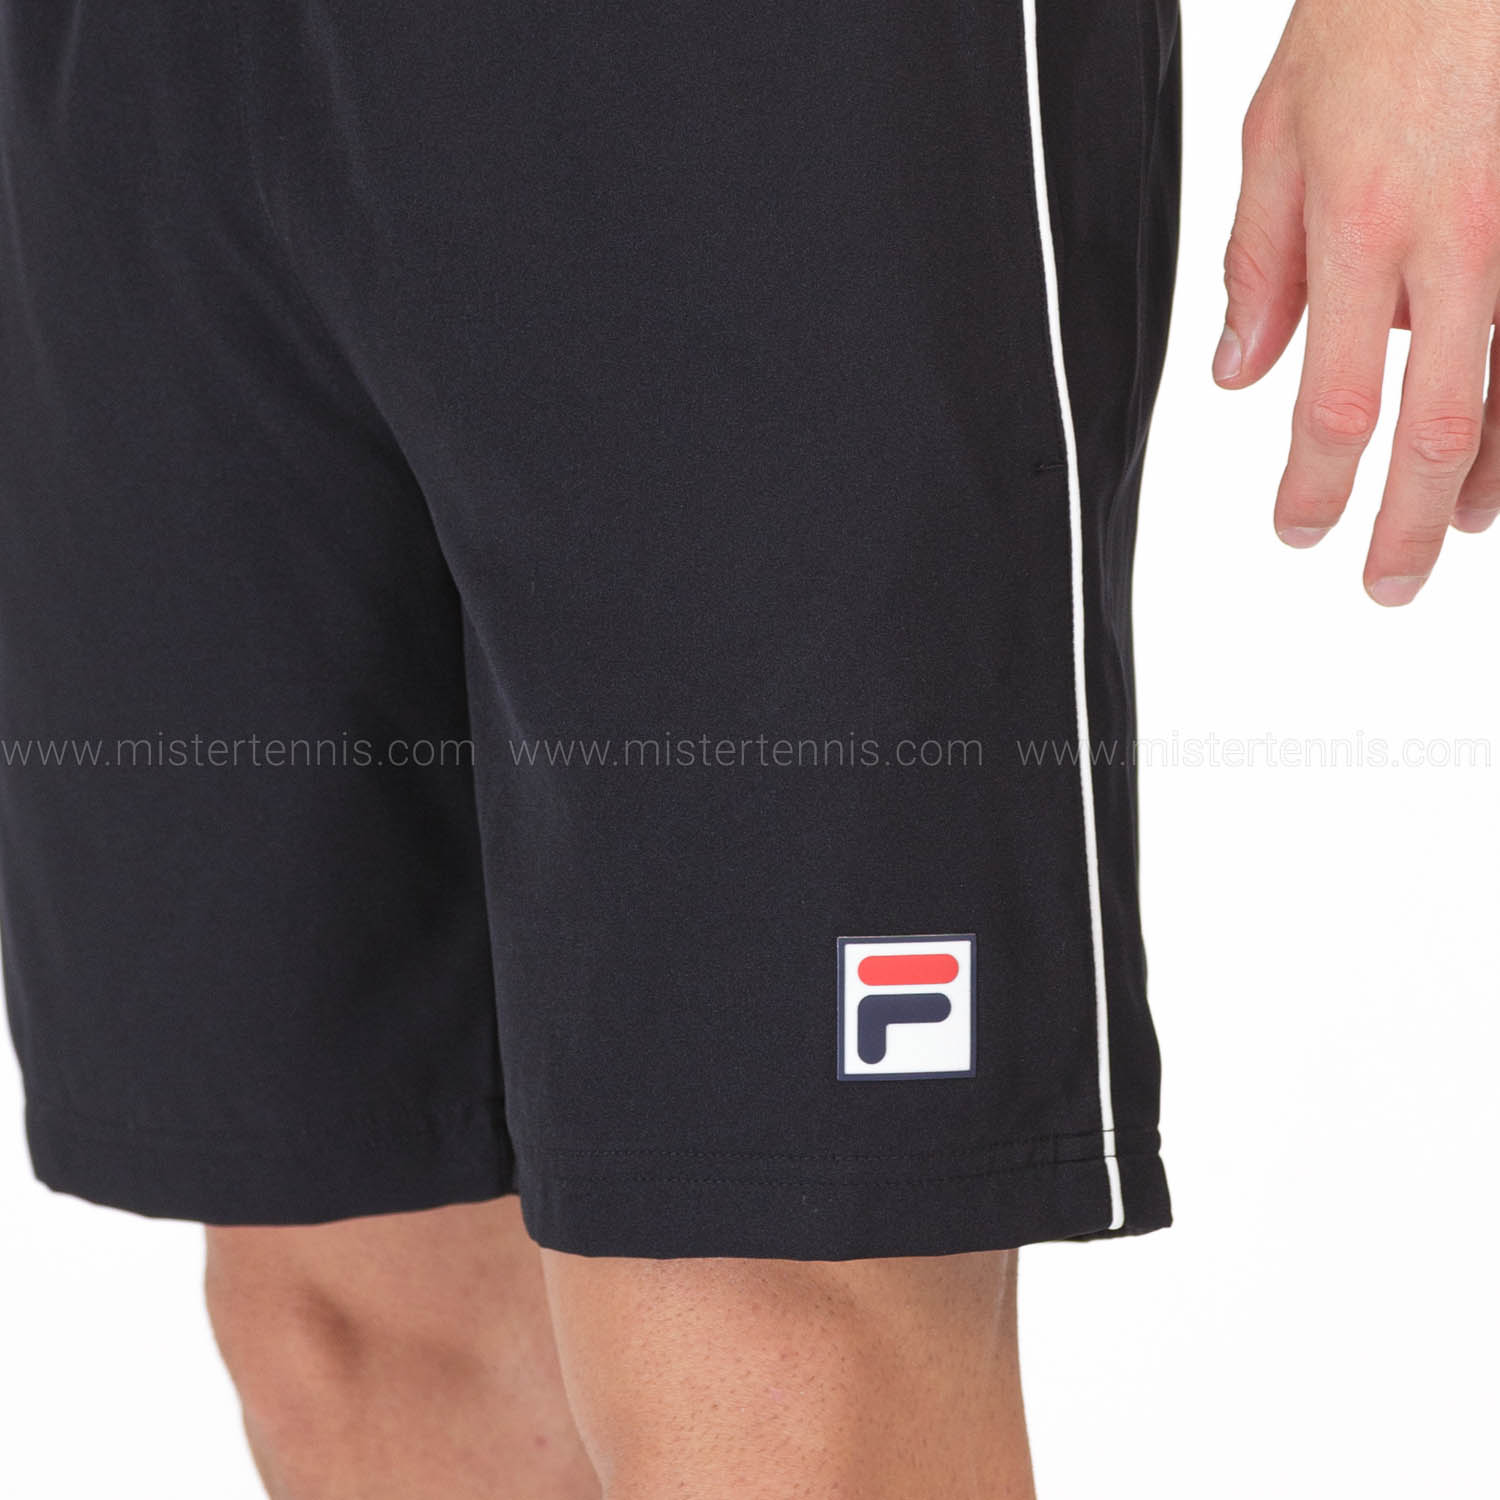 Fila Leon 7in Shorts - Black